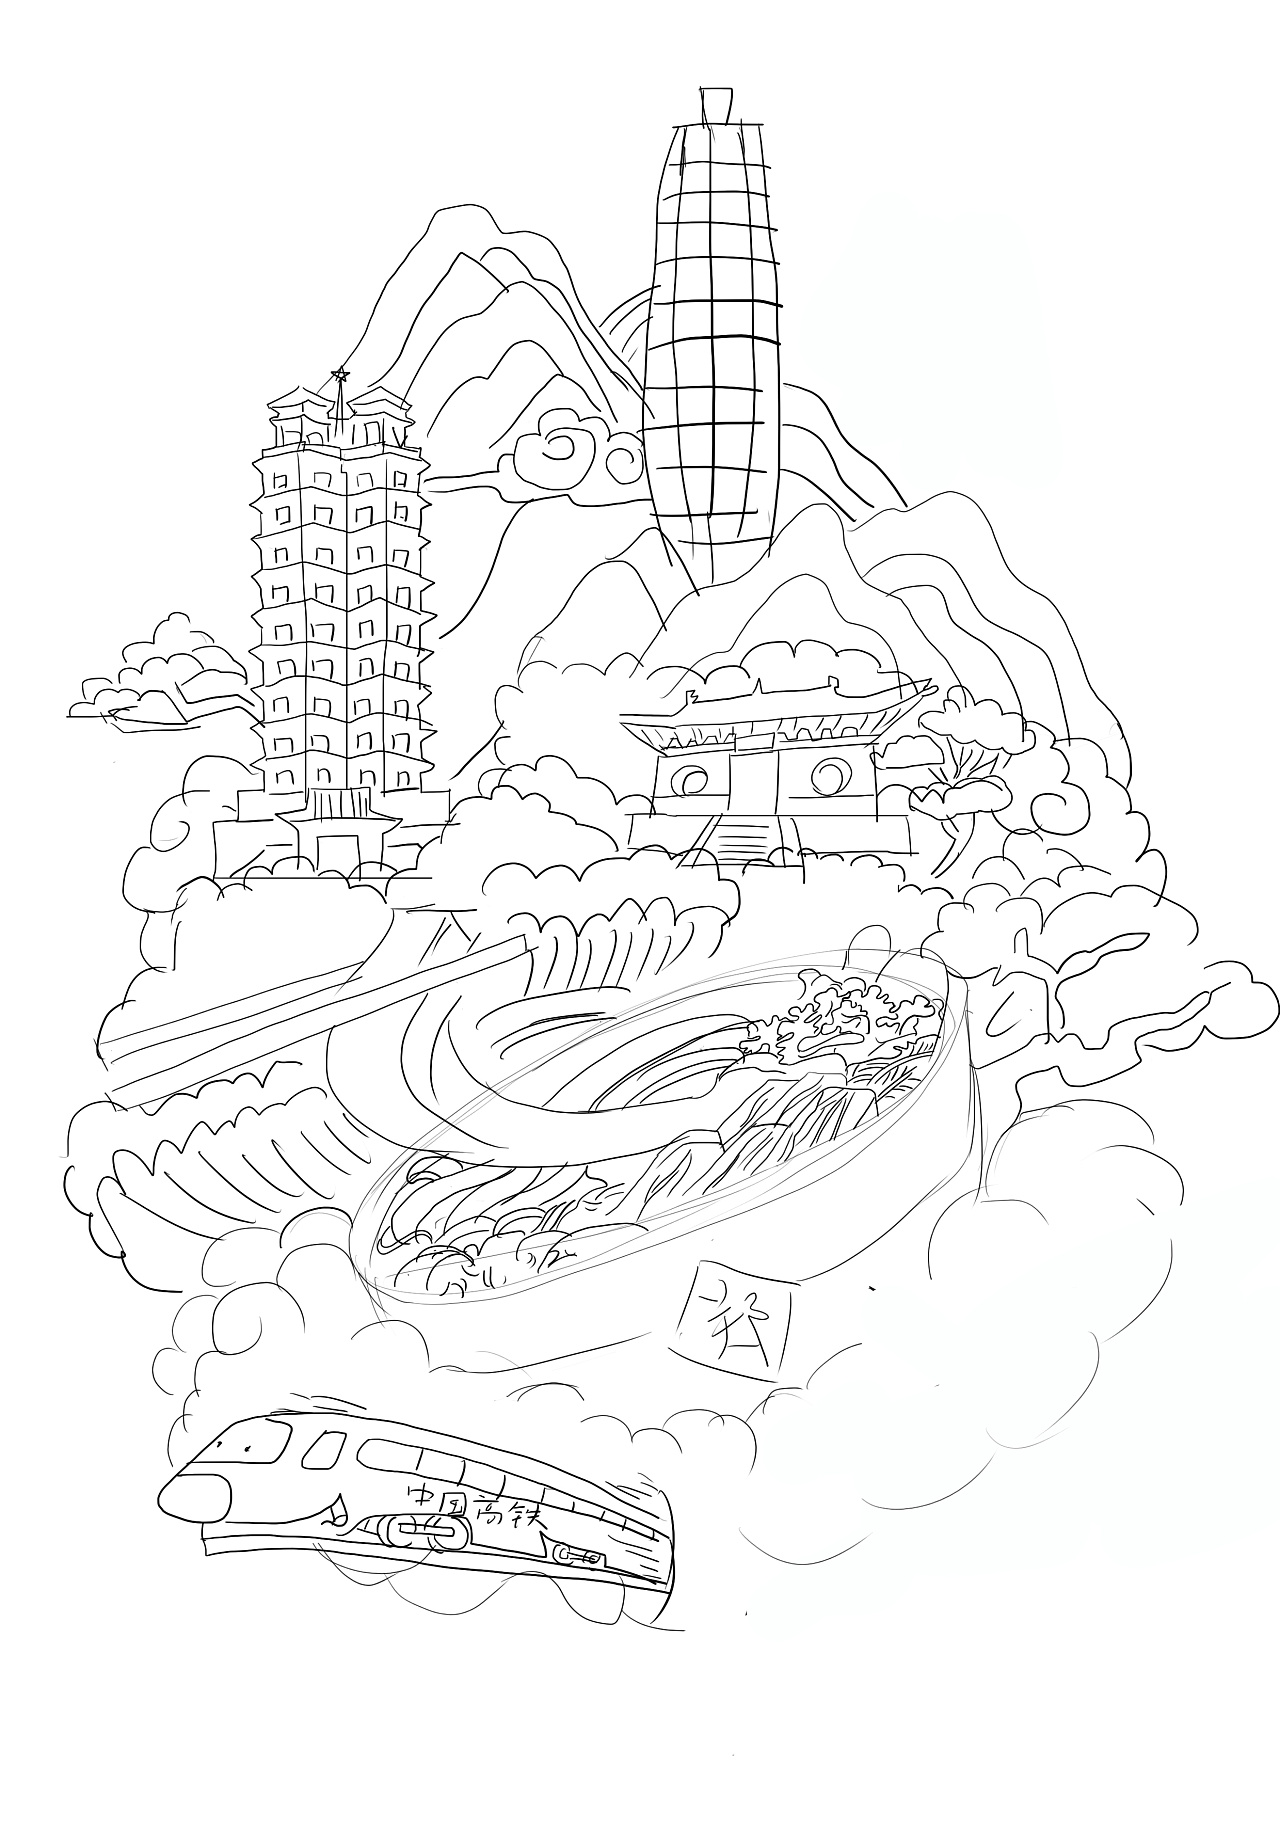 郑州玉米楼的简易画法图片